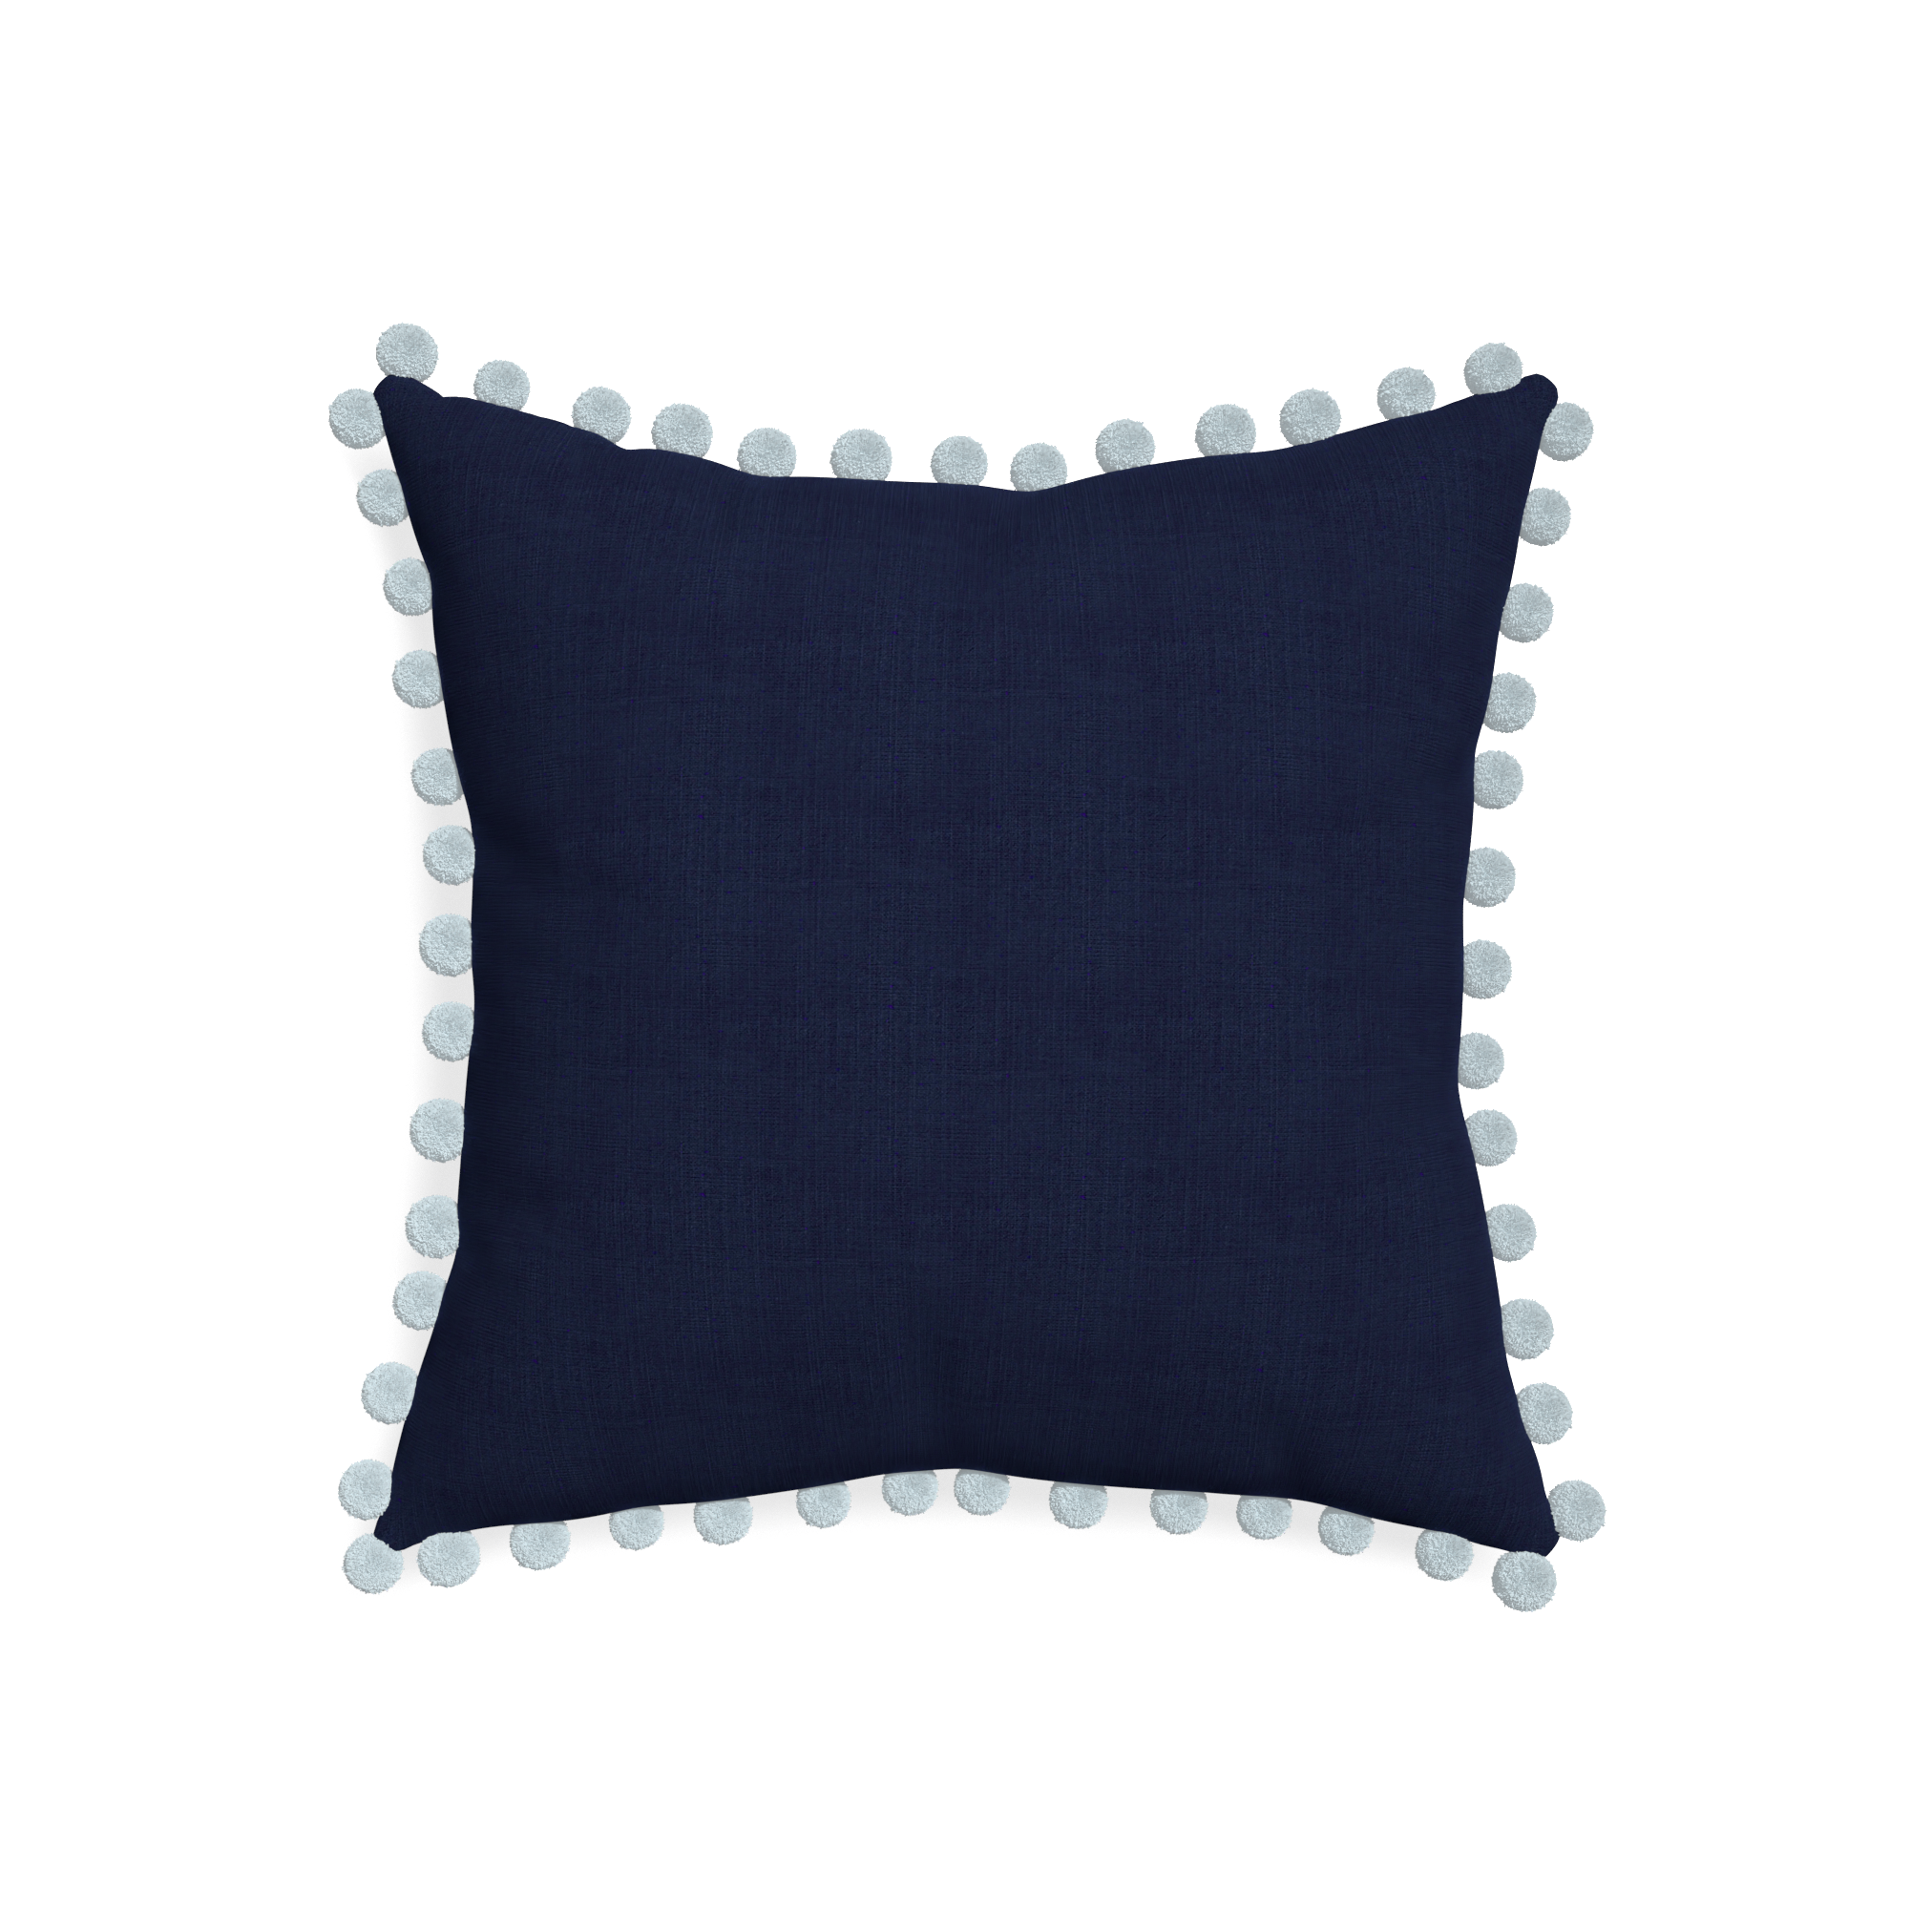 Midnight Cotton Pillow - 20"x20" w. Powder Pom Pom